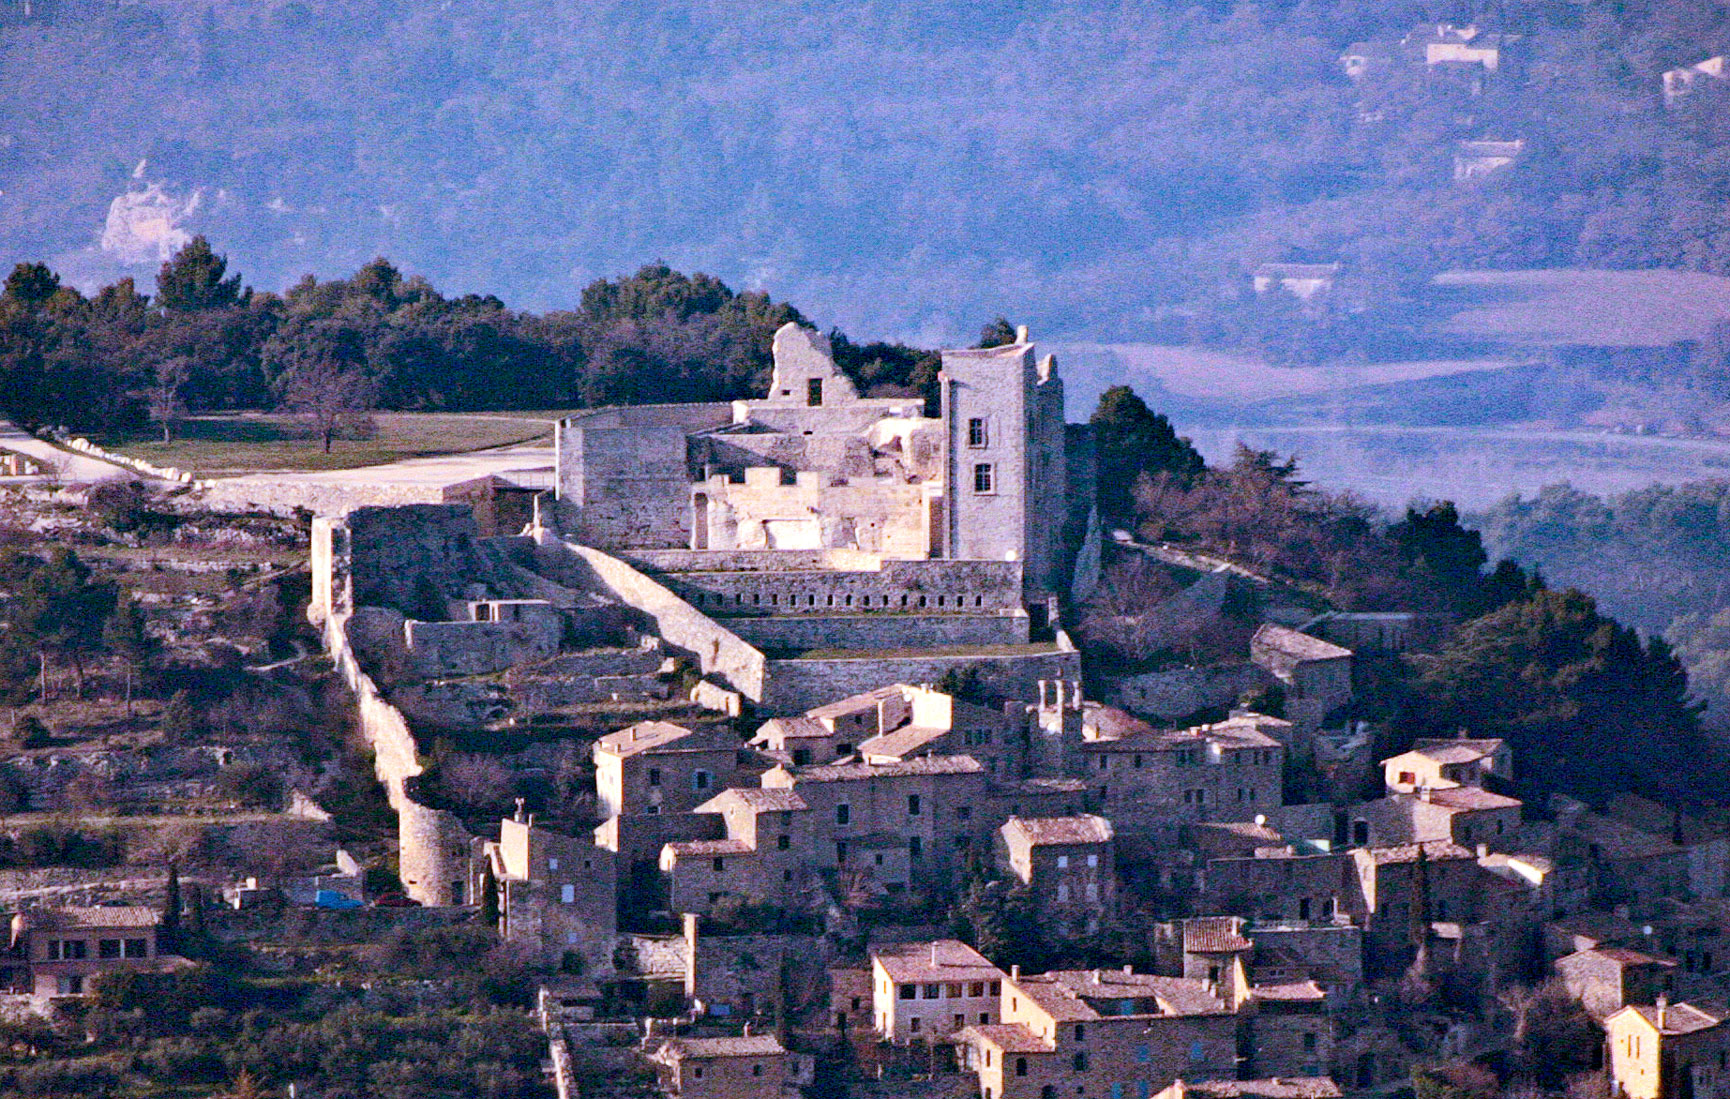 Le chateau de Lacoste, Vaucluse